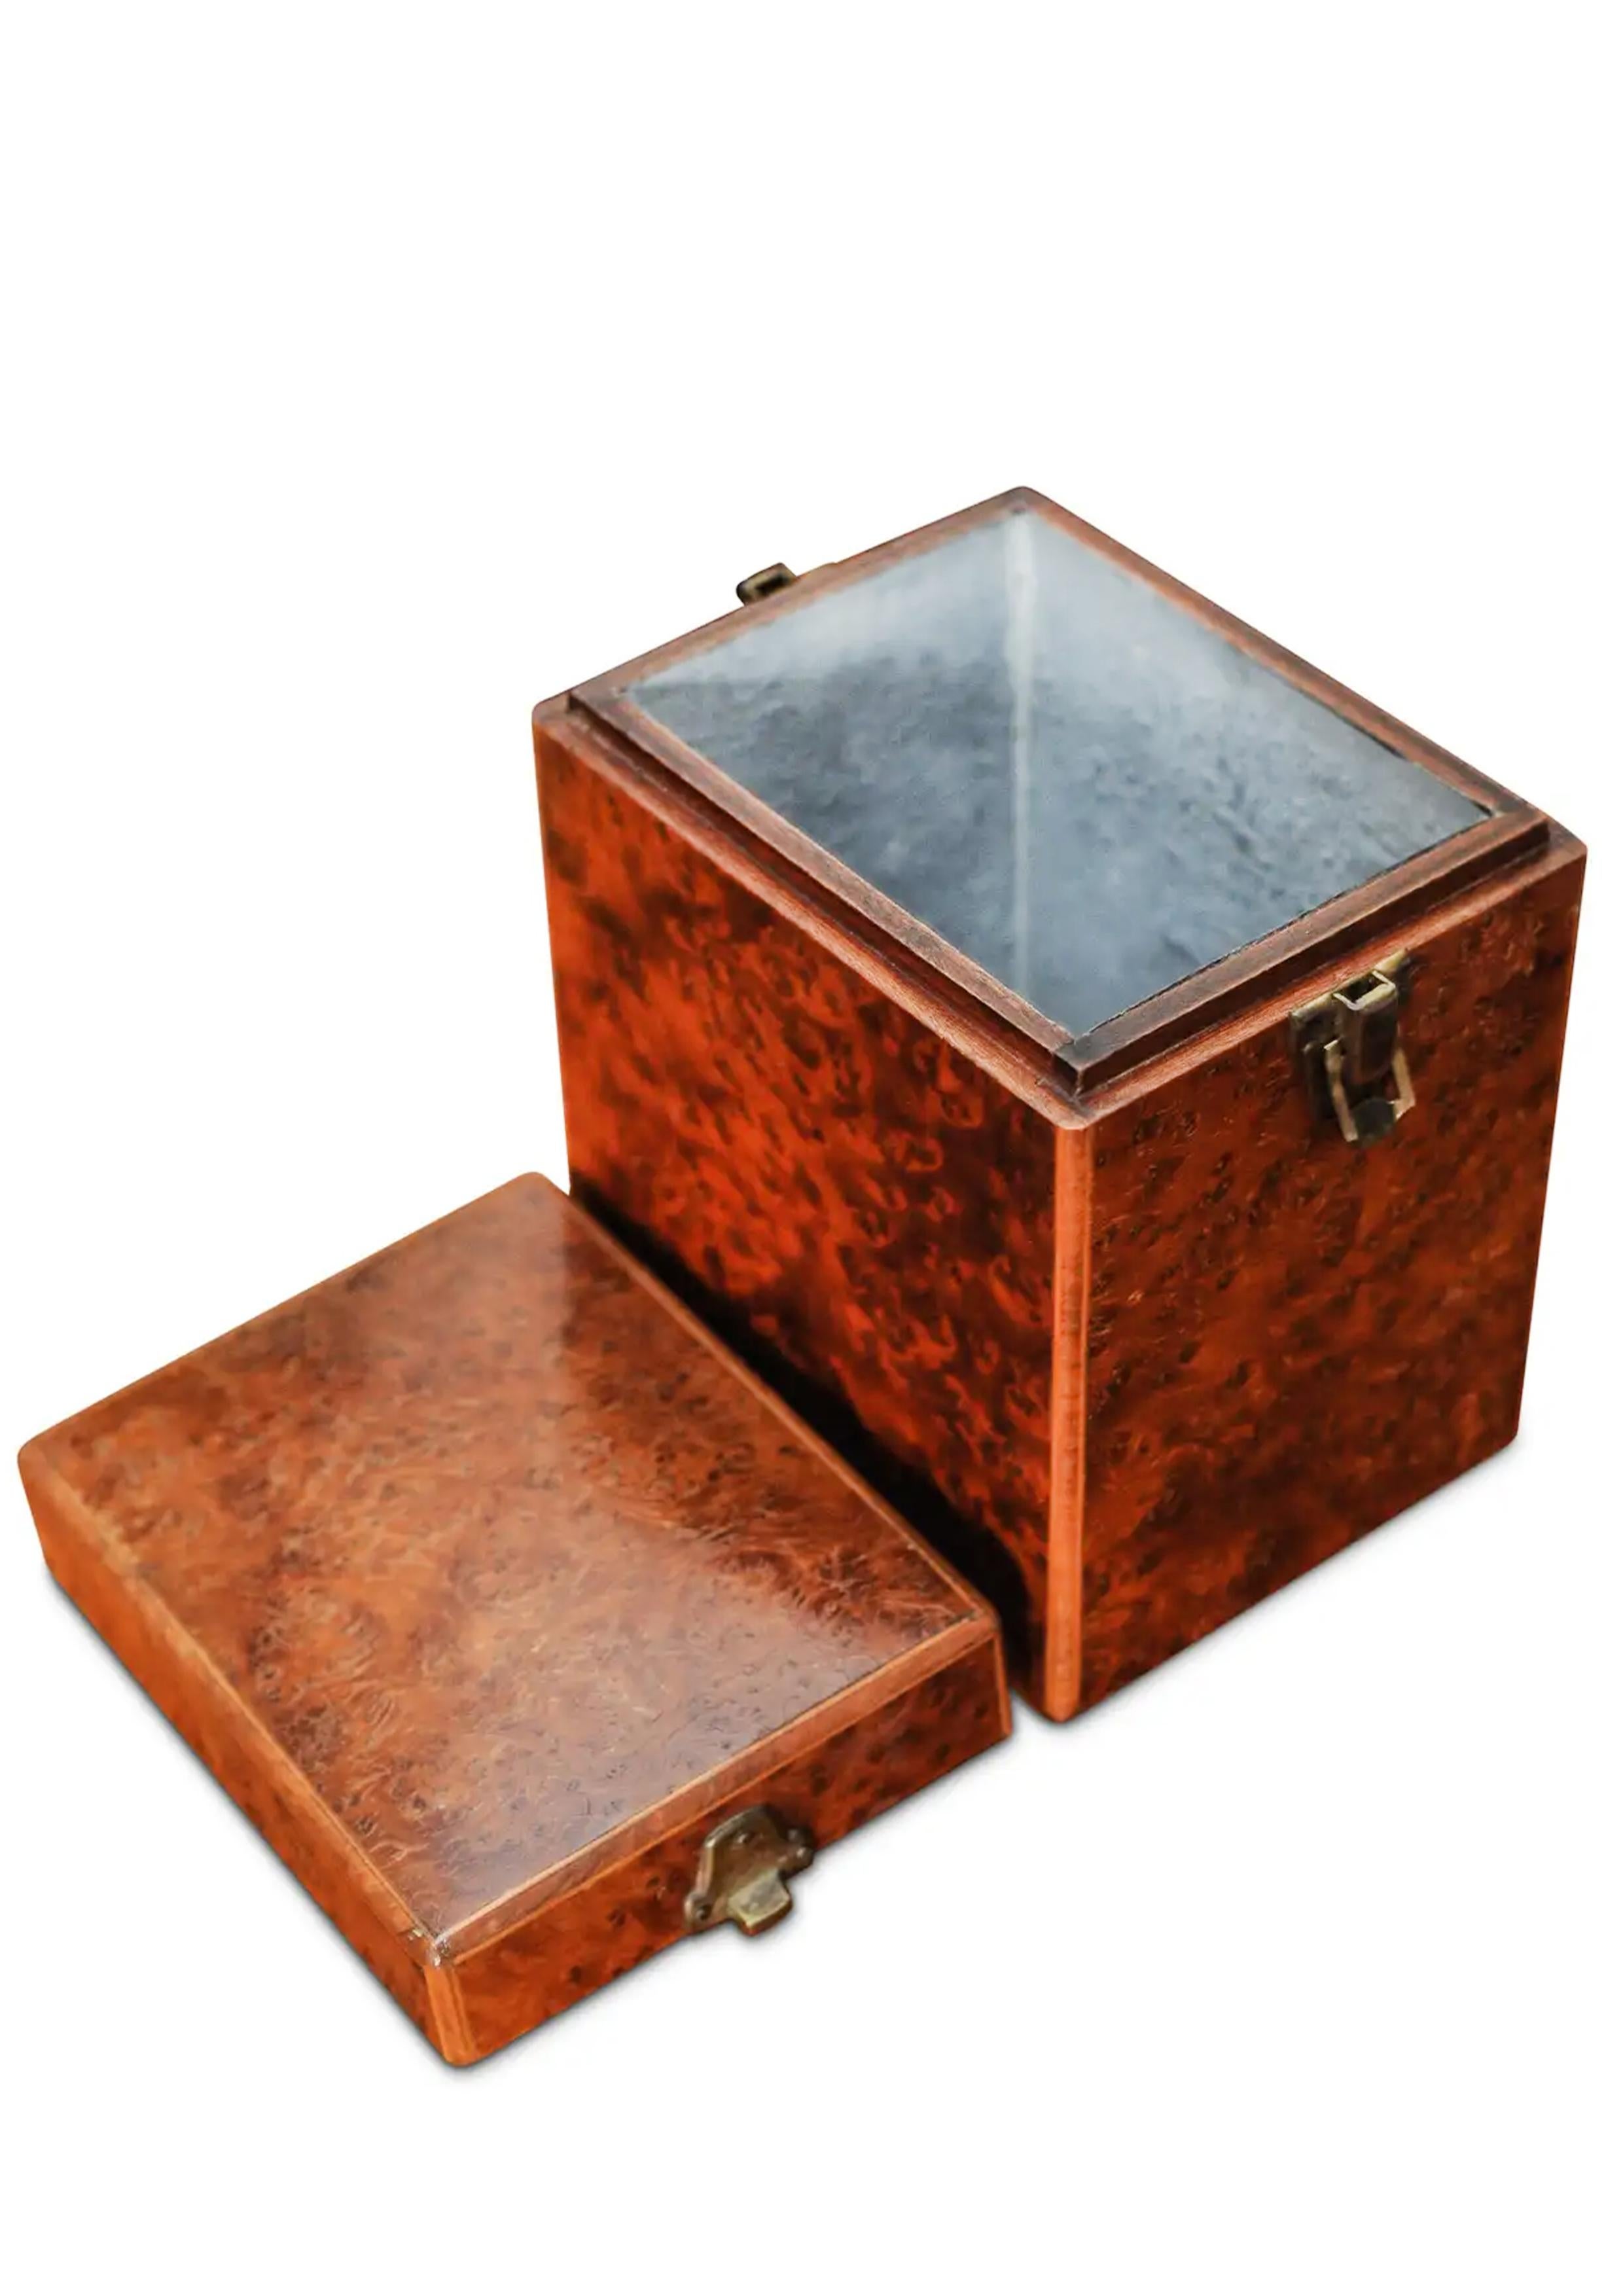 Eine handgefertigte viktorianische Gratnuss & Inlay Tea Caddy mit Messing Scharniere

Eine Teedose ist eine Schachtel, ein Glas, ein Kanister oder ein anderes Gefäß, das zur Aufbewahrung von Tee verwendet wird. Als der Tee aus Asien nach Europa kam,